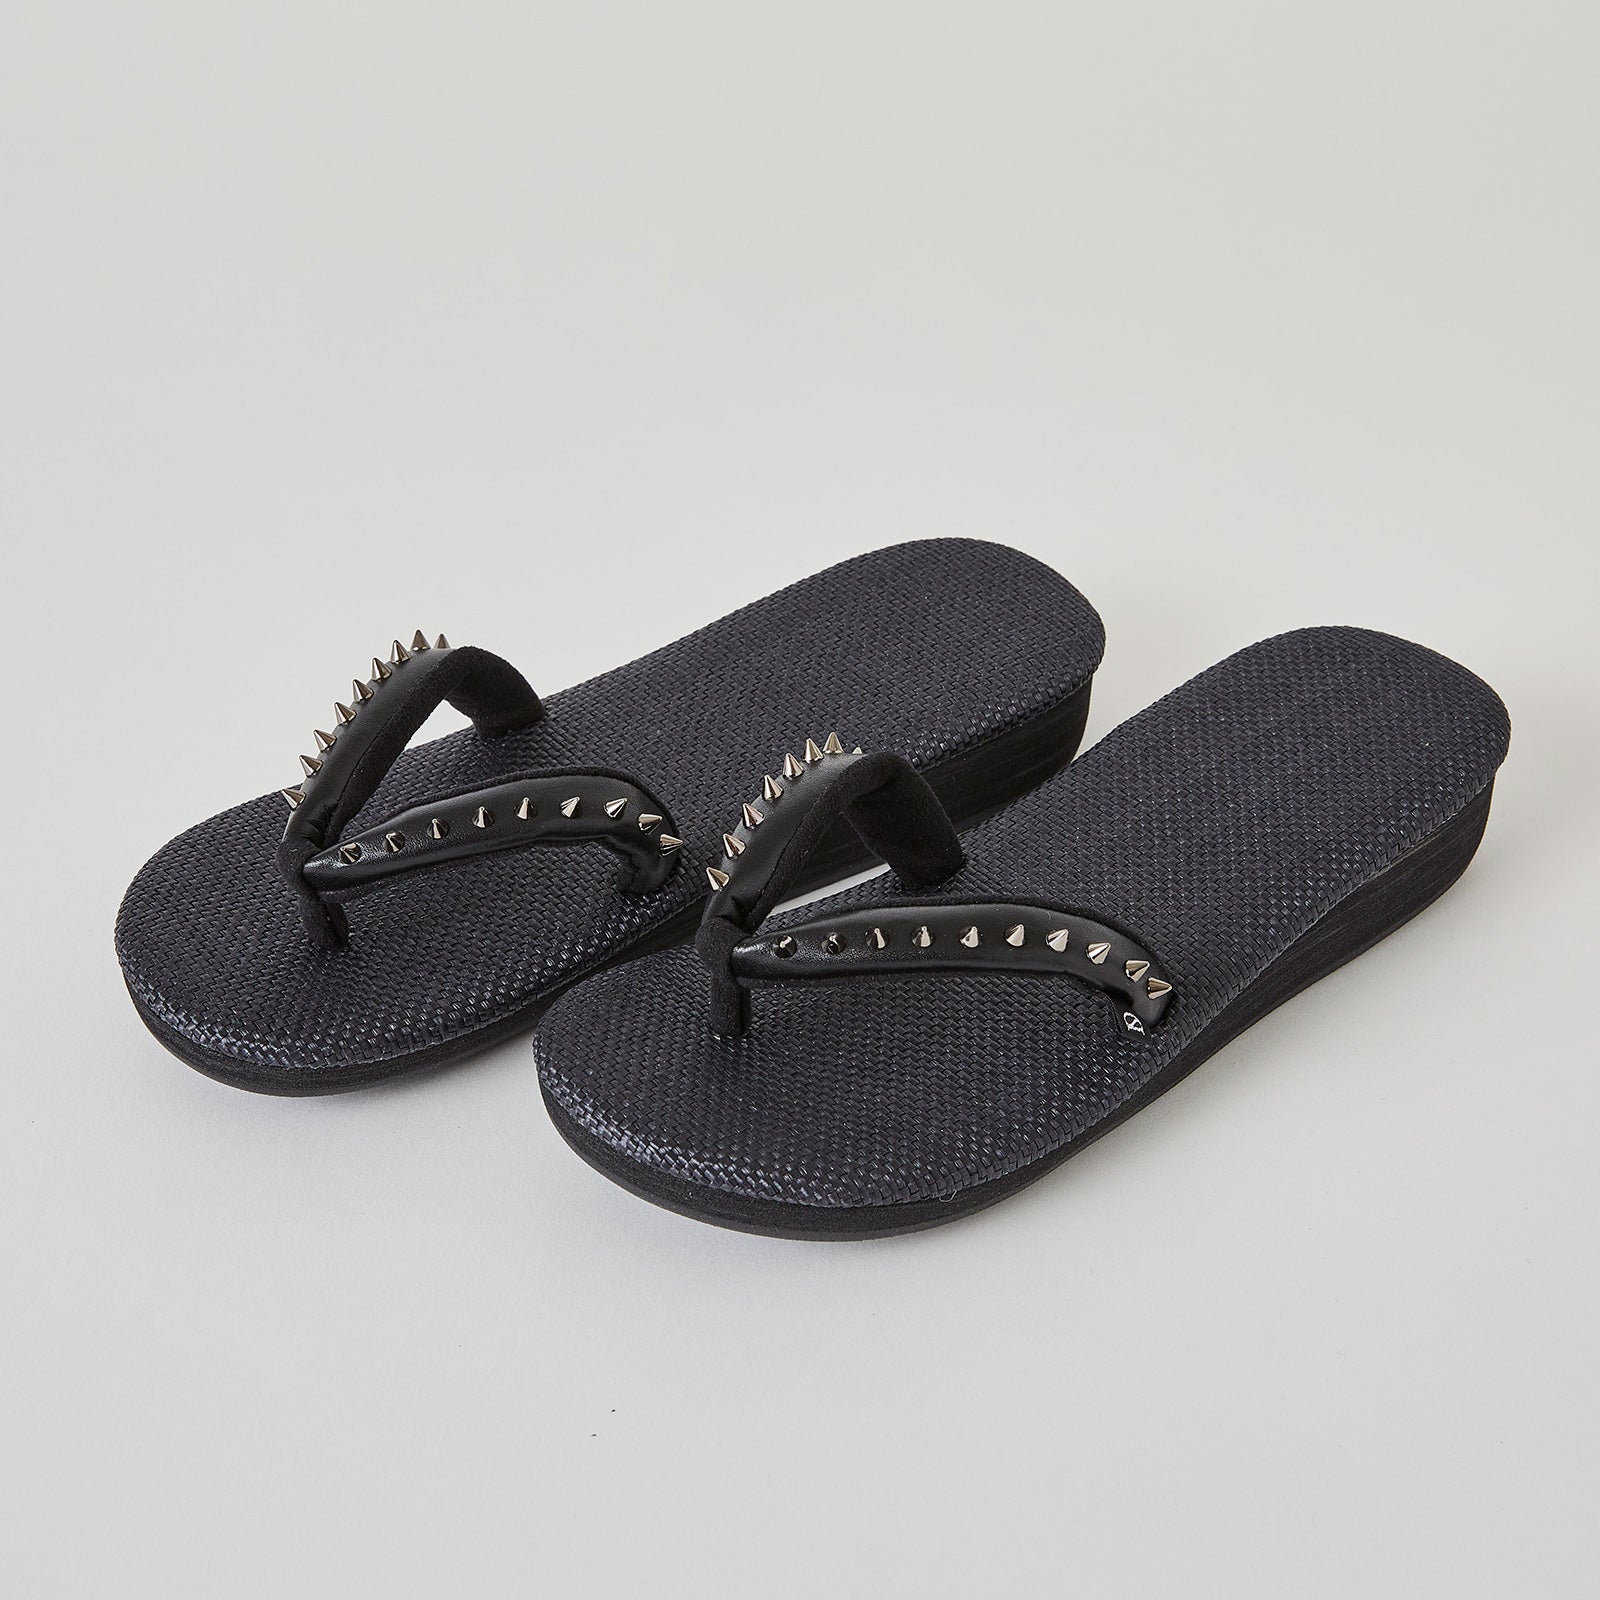 Studded sandals silver (SLADKY x Hishiya)